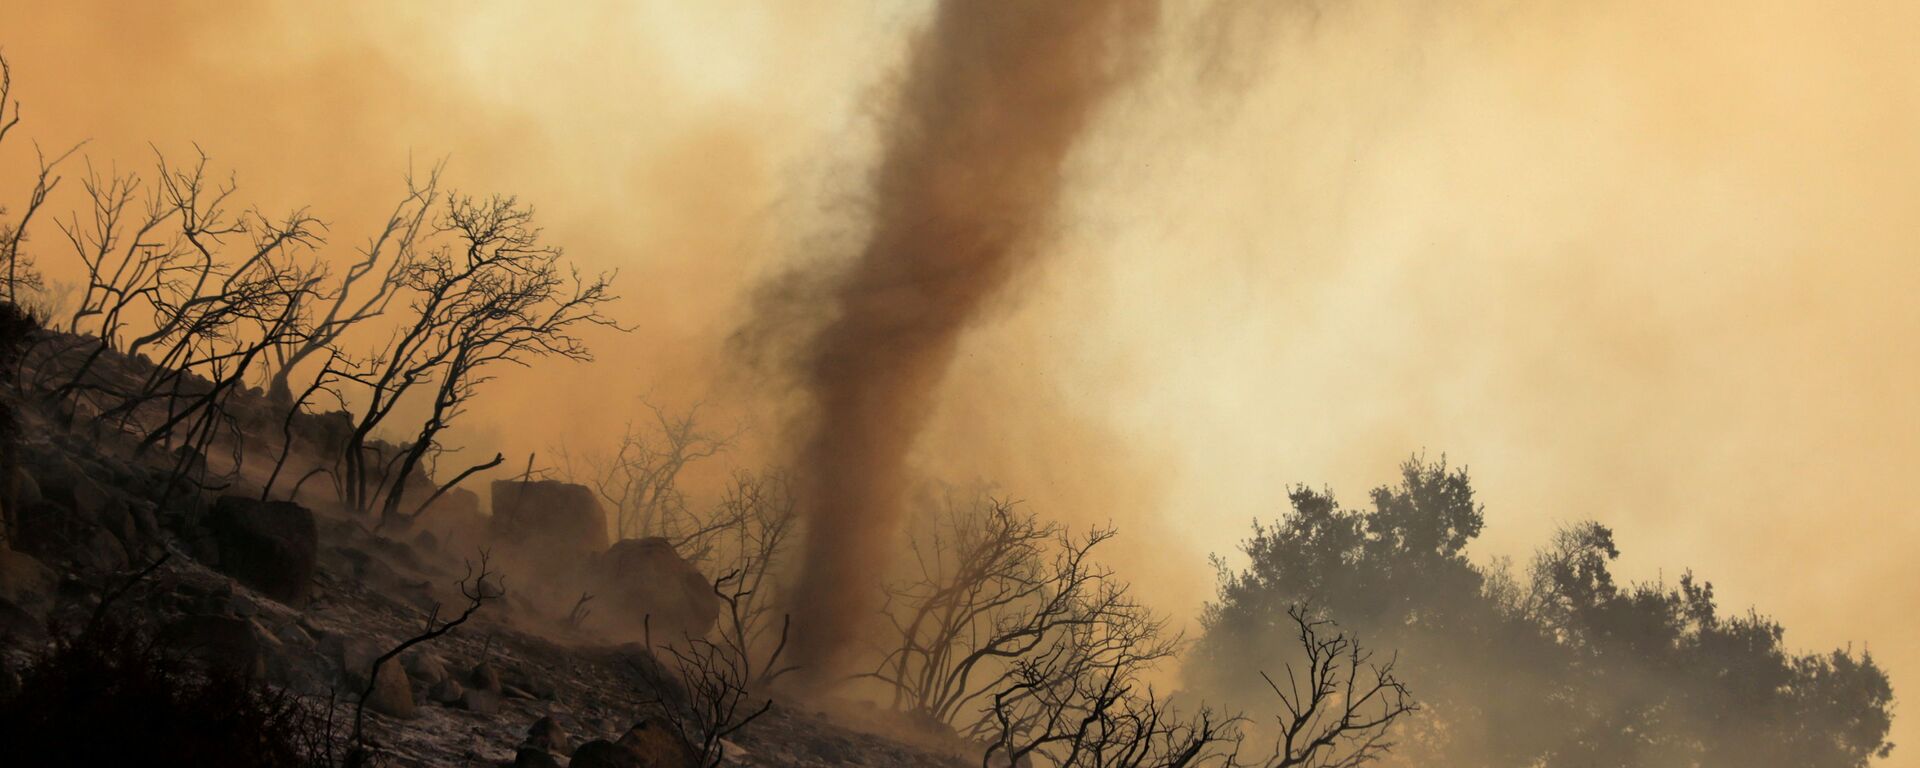 Пепельный вихрь во время природных пожаров в Калифорнии  - Sputnik Mundo, 1920, 12.08.2021